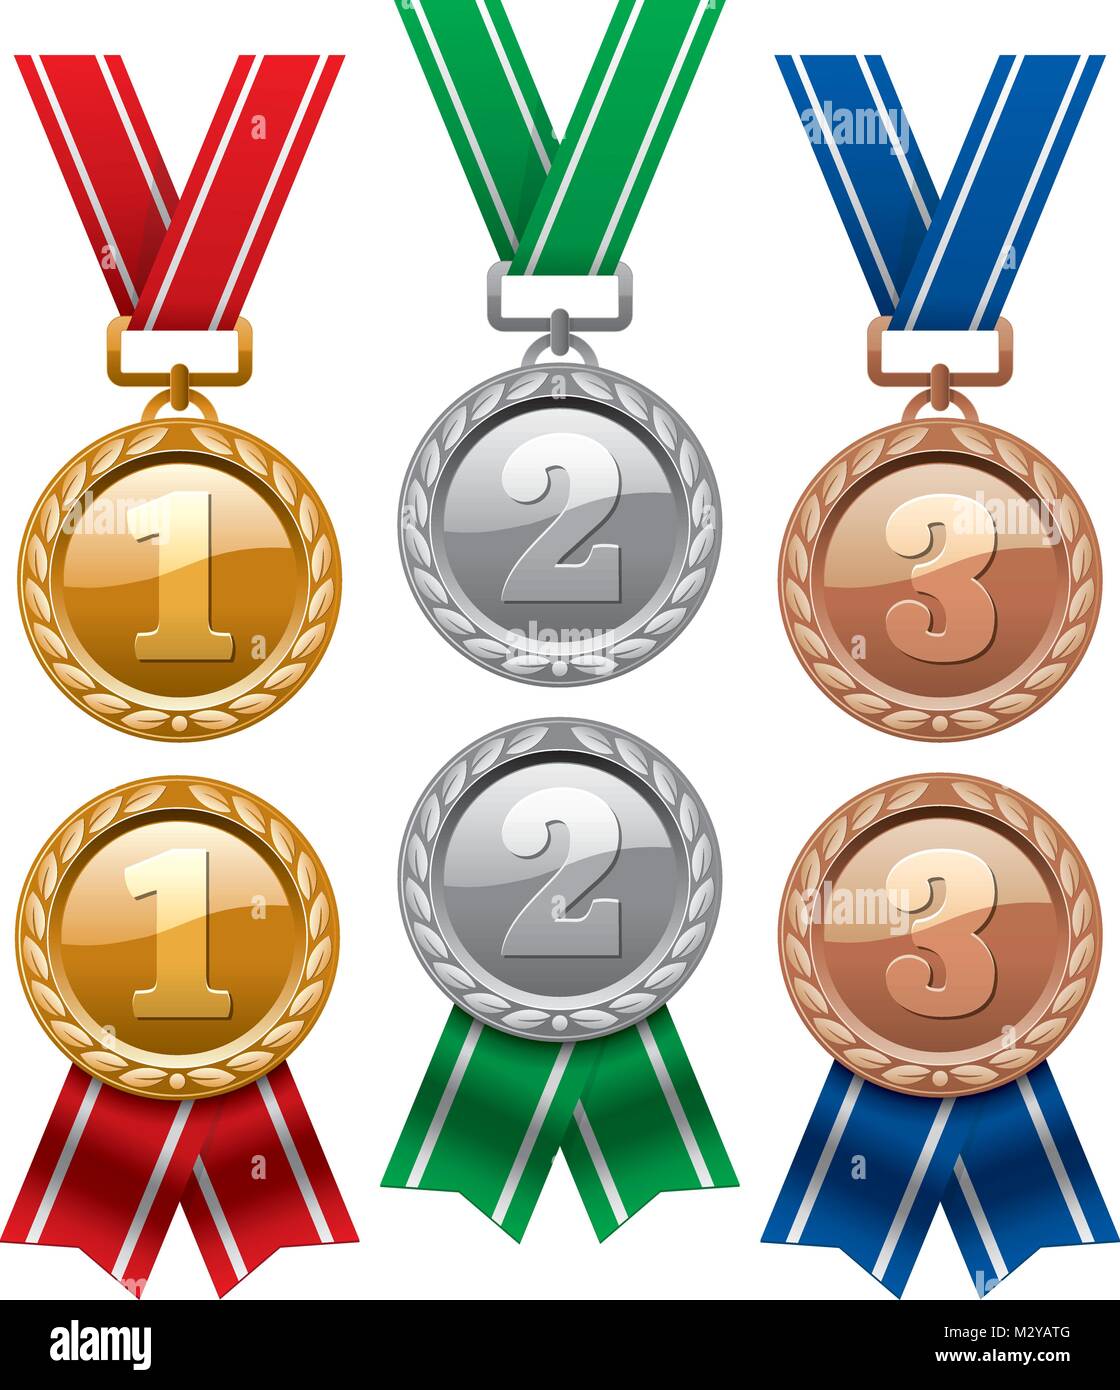 Vektor einrichten von Gold-, Silber- und Bronzemedaillen mit roten Bändern auf weißem Hintergrund. glänzende Medaille Symbole. Eps 10 Abbildung Stock Vektor